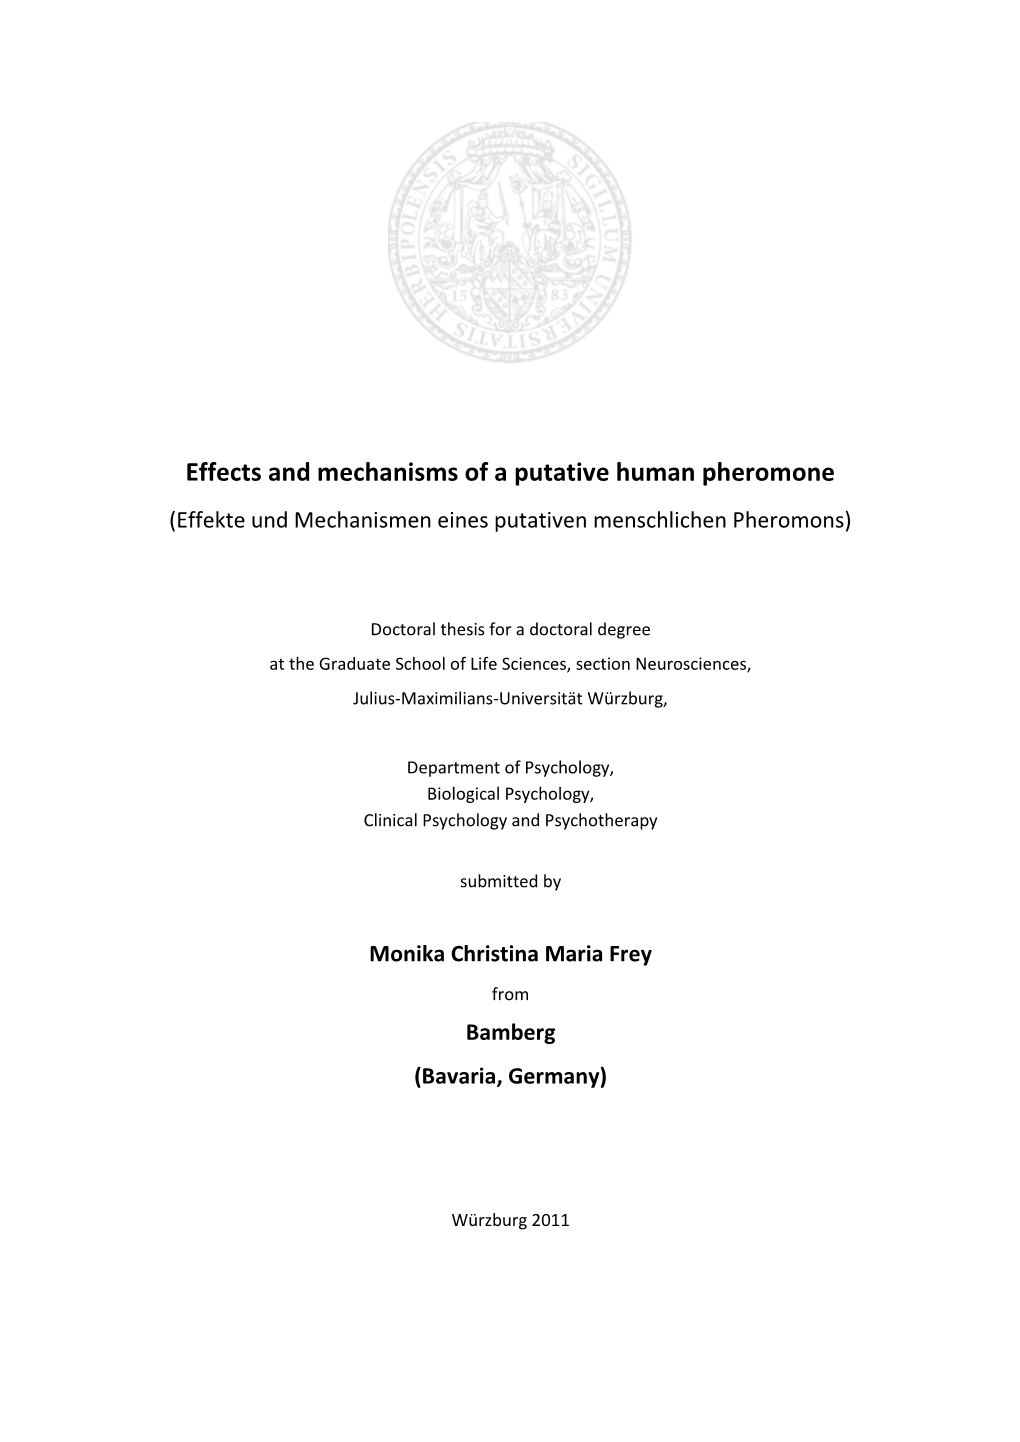 Effects and Mechanisms of a Putative Human Pheromone (Effekte Und Mechanismen Eines Putativen Menschlichen Pheromons)